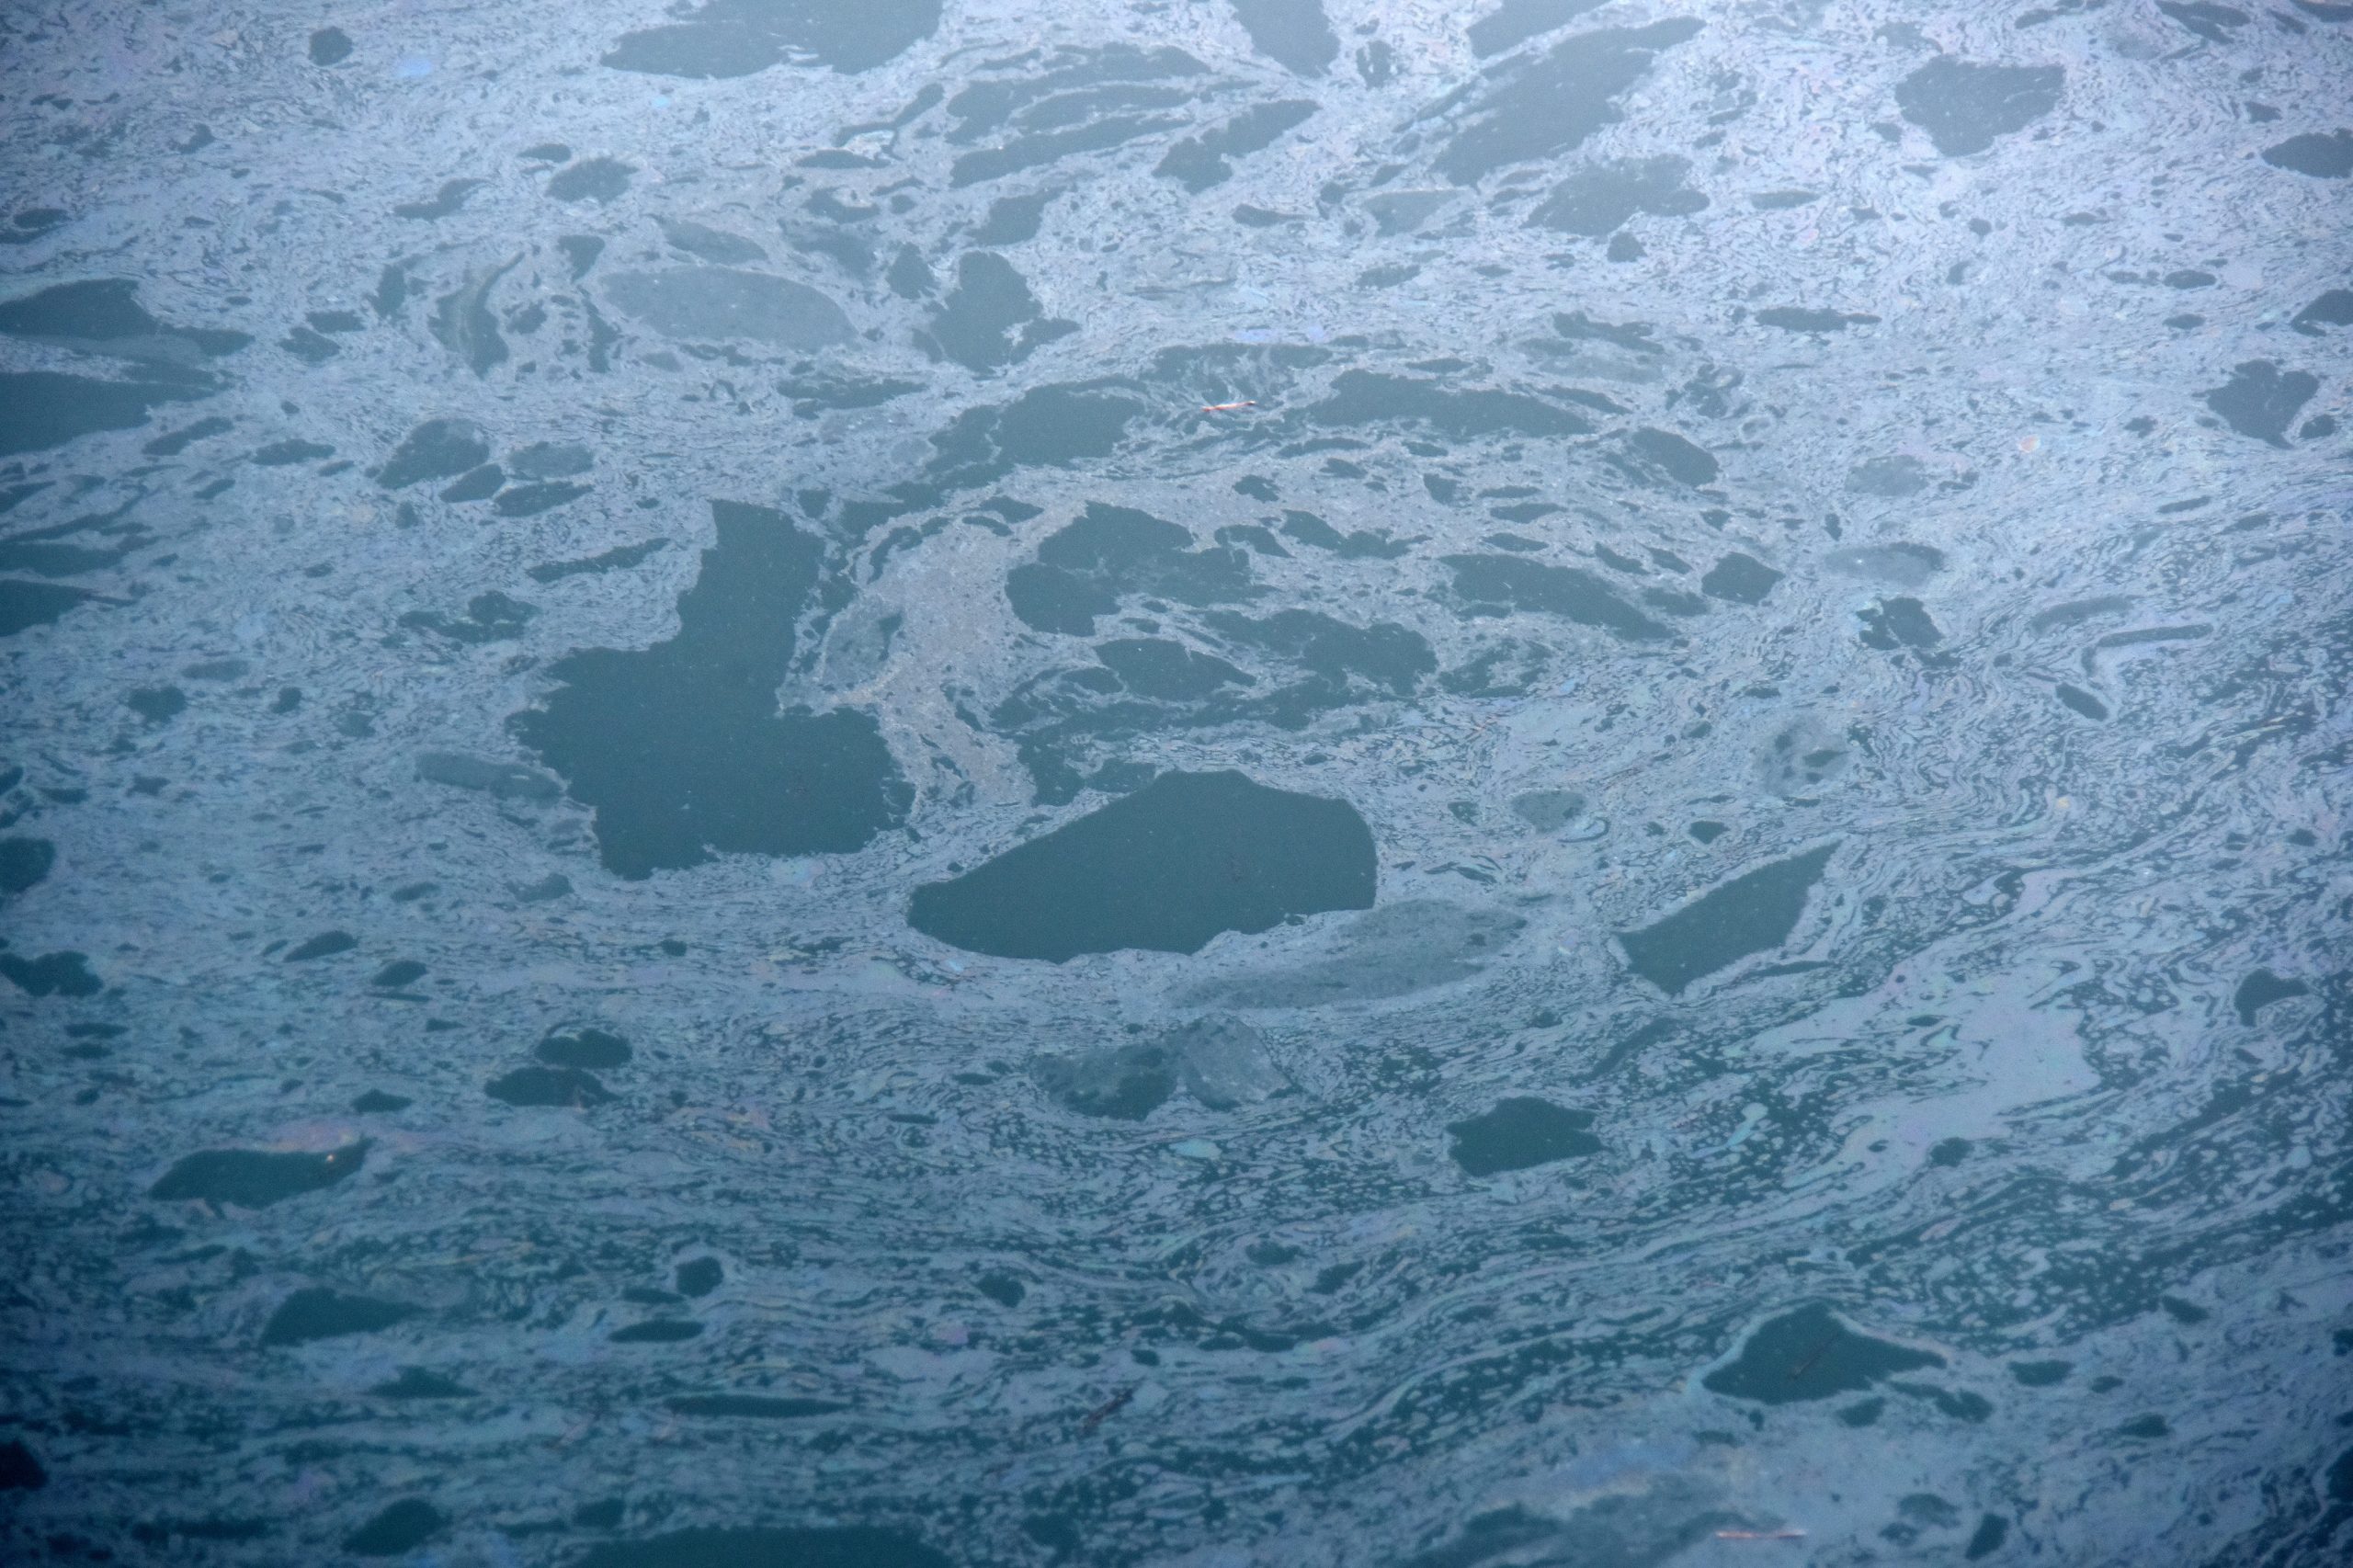 Pula: Masnoćom zagađeno more u marini 16.01.2019., Pula - U marini na povrsini mora pliva tanki sloj masnoce. 
Photo: Dusko Marusic/PIXSELL